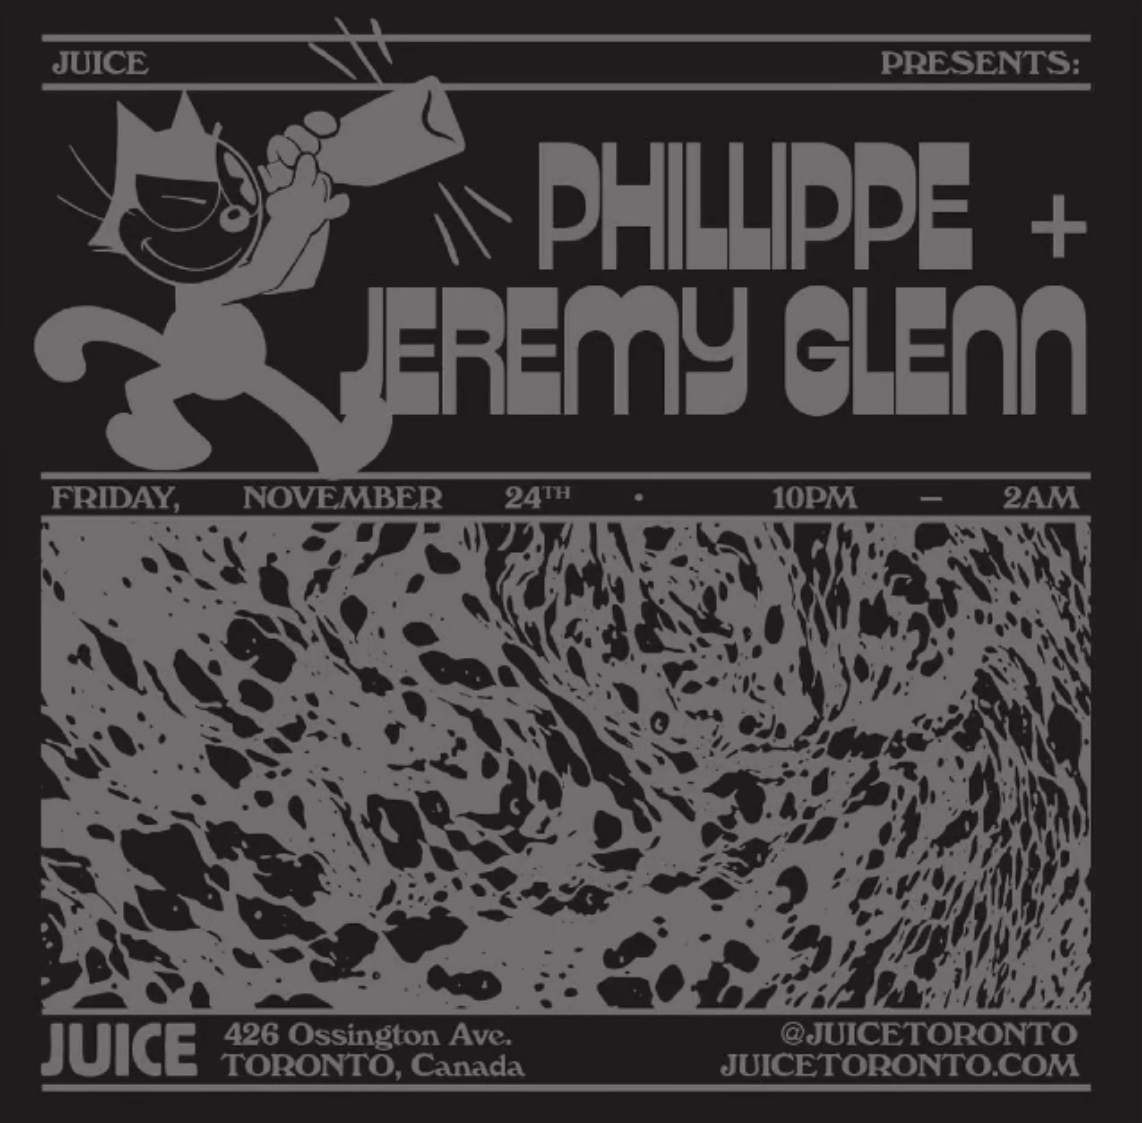 Juice presents Phillippe and Jeremy Glenn - Página frontal